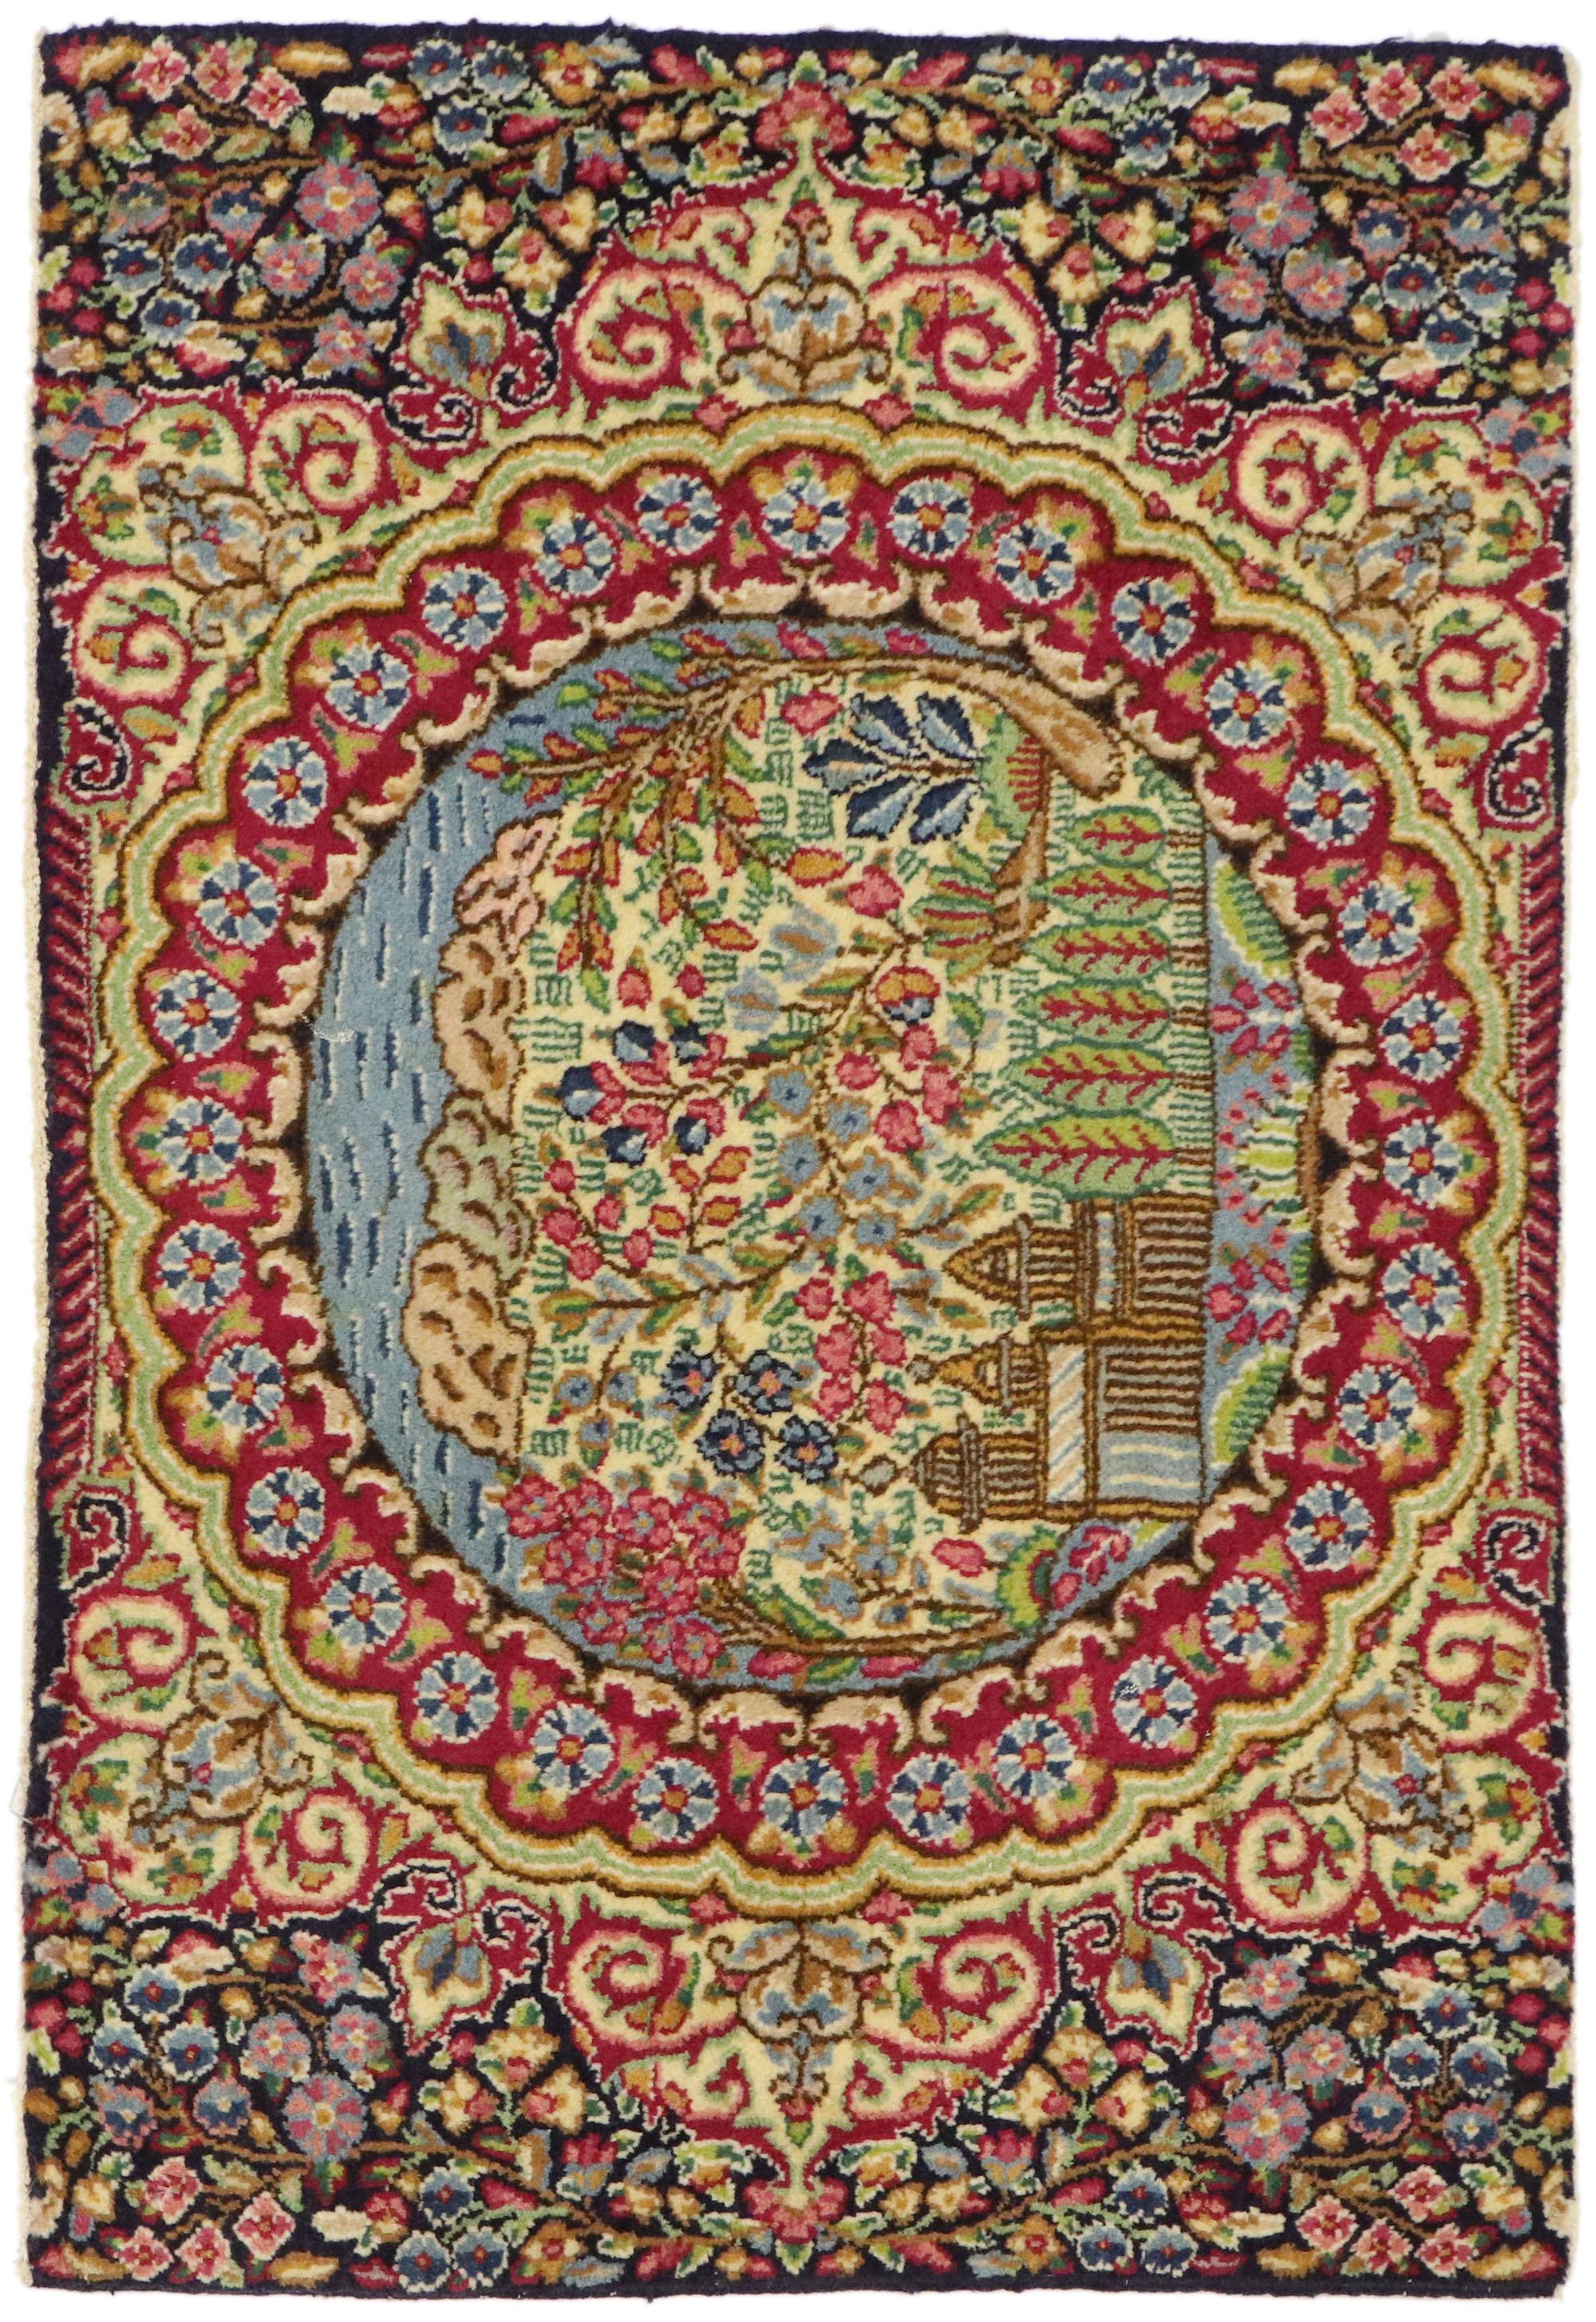 75814 Vintage Persian Kerman Pictorial Rug 02'00 x 02'04. Avec son design intemporel et sa beauté sans effort, ce tapis Kerman vintage en laine noué à la main est une vision captivante de la beauté tissée. Le champ abrasif présente une belle scène